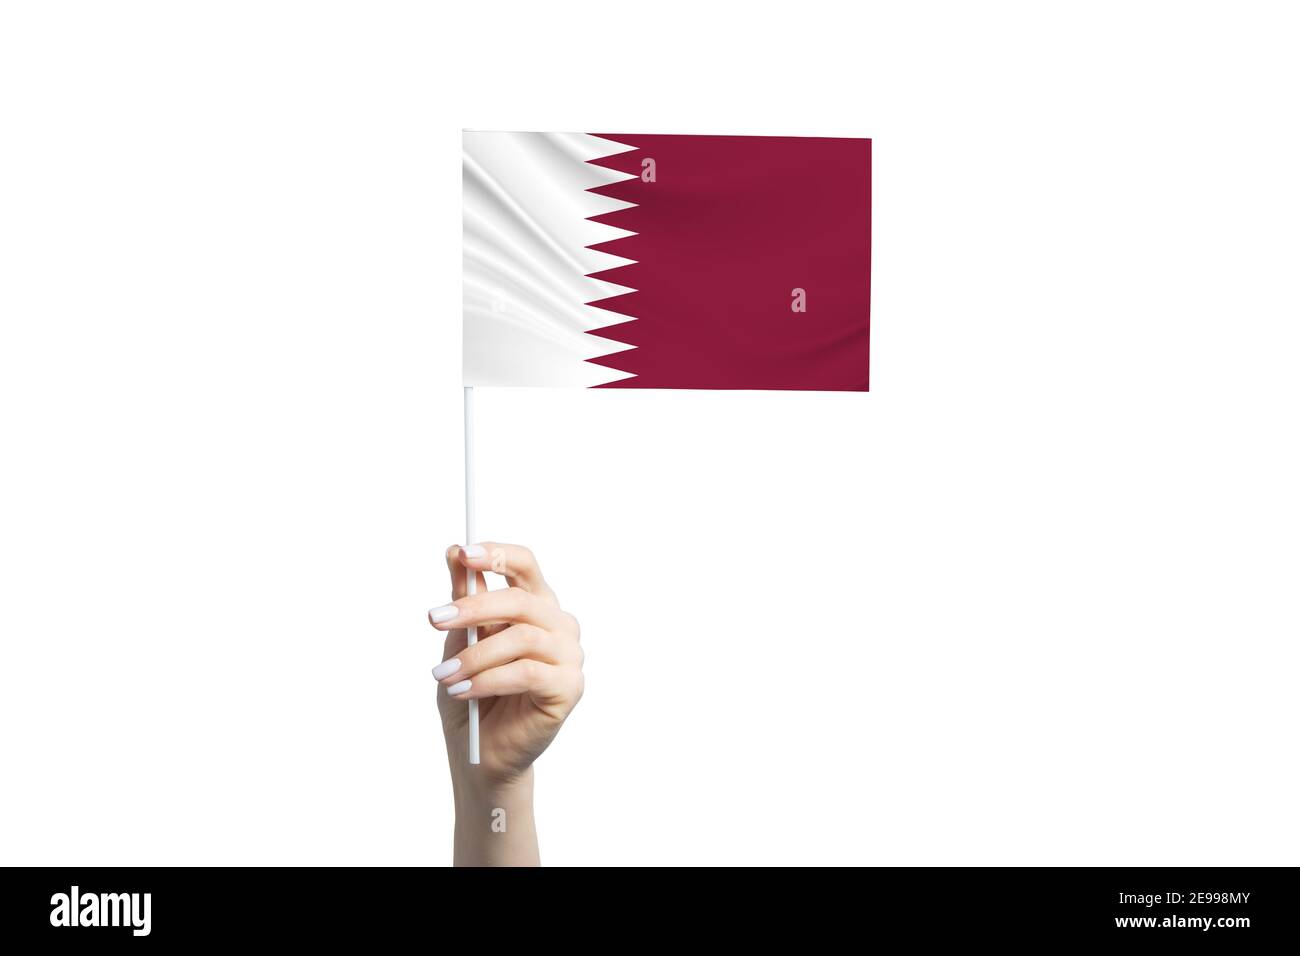 Qatar Flag - lá cờ đầy ý nghĩa và xúc cảm của đất nước Qatar. Hãy tận hưởng một chuyến đi tìm hiểu văn hóa của đất nước Trung Đông với những câu chuyện thú vị mà lá cờ này đưa đến.